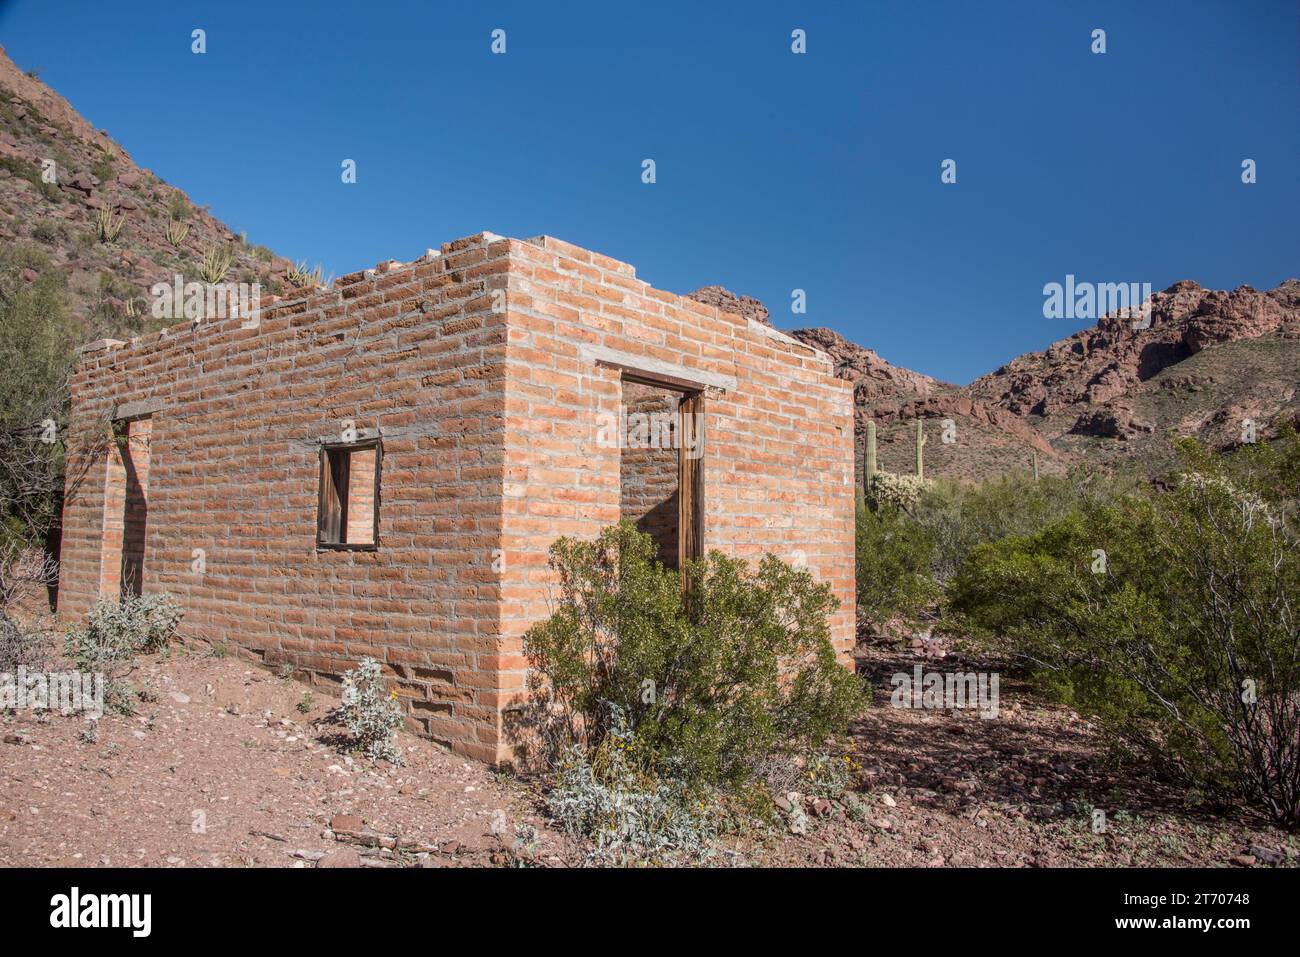 Ruine historique de Ranchero, maison d'adobe, Miller Ranch, Alamo Canyon, désert de Sonoran, Organ Pipe Cactus National Monument, AJO, Arizona, États-Unis Banque D'Images